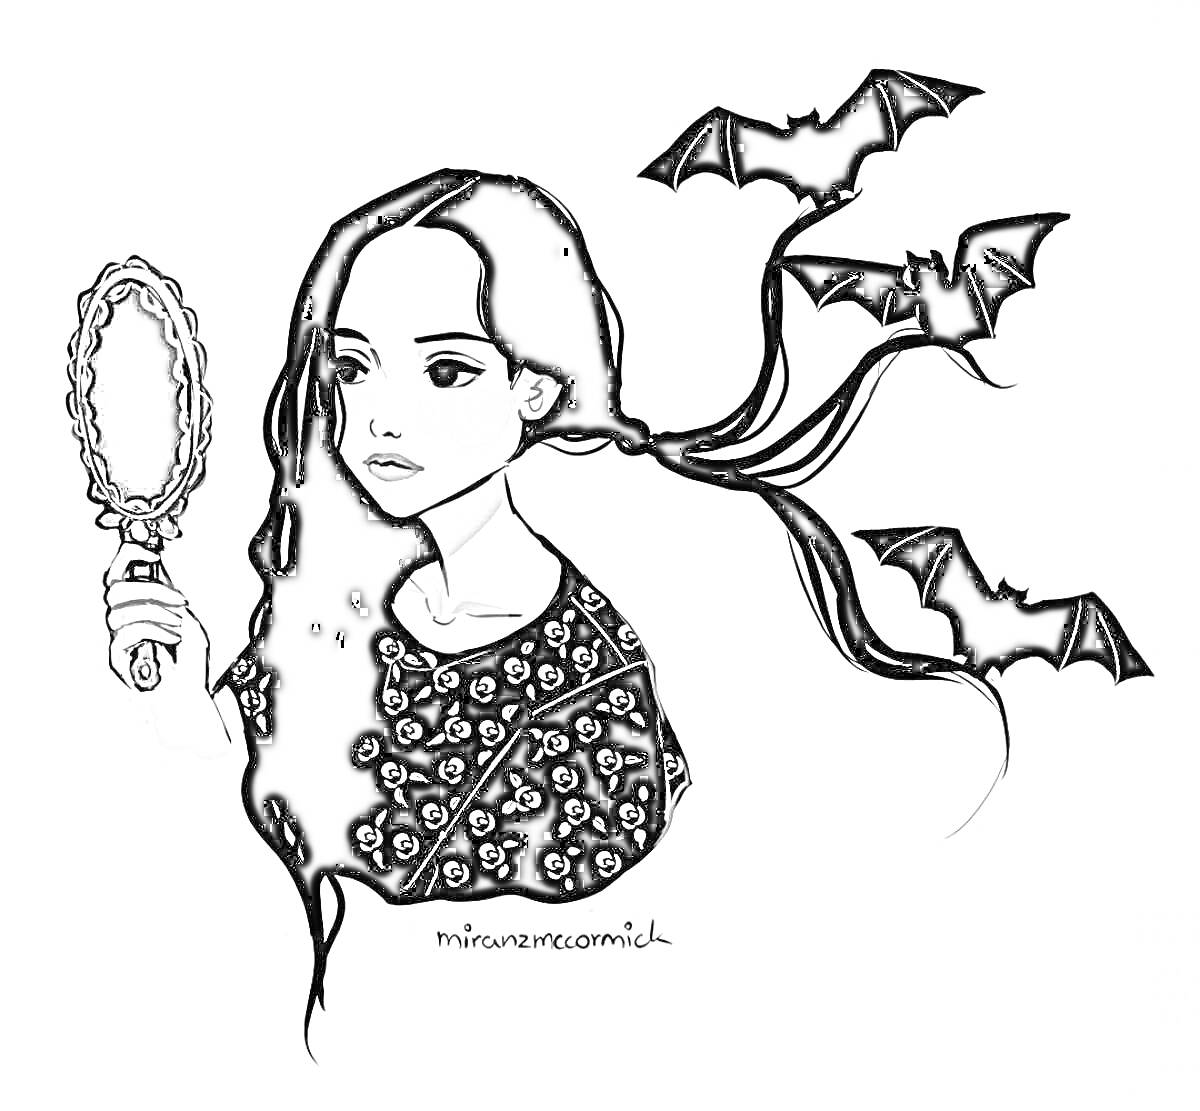 Раскраска Девушка с длинными черными волосами, держит зеркало, черные летучие мыши, черный наряд с узором черепов